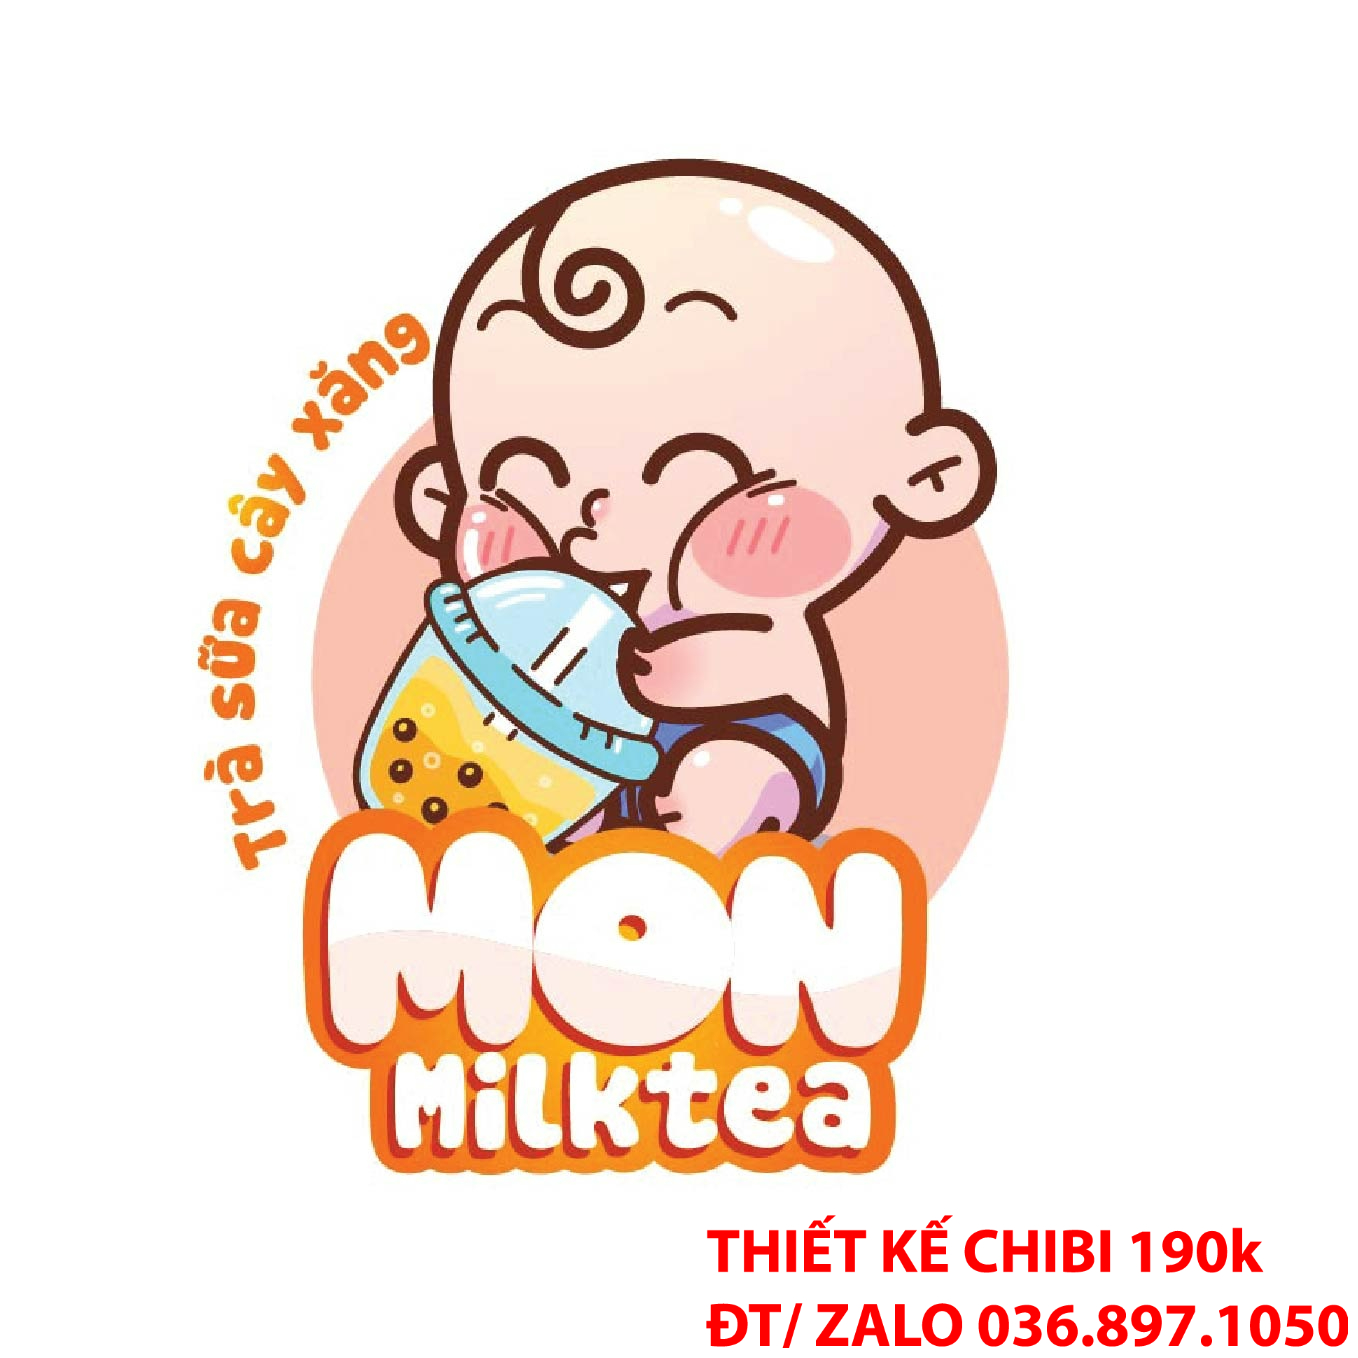 Mê hoặc khách hàng ngay từ cái nhìn đầu tiên với logo chibi trà sữa ăn vặt.